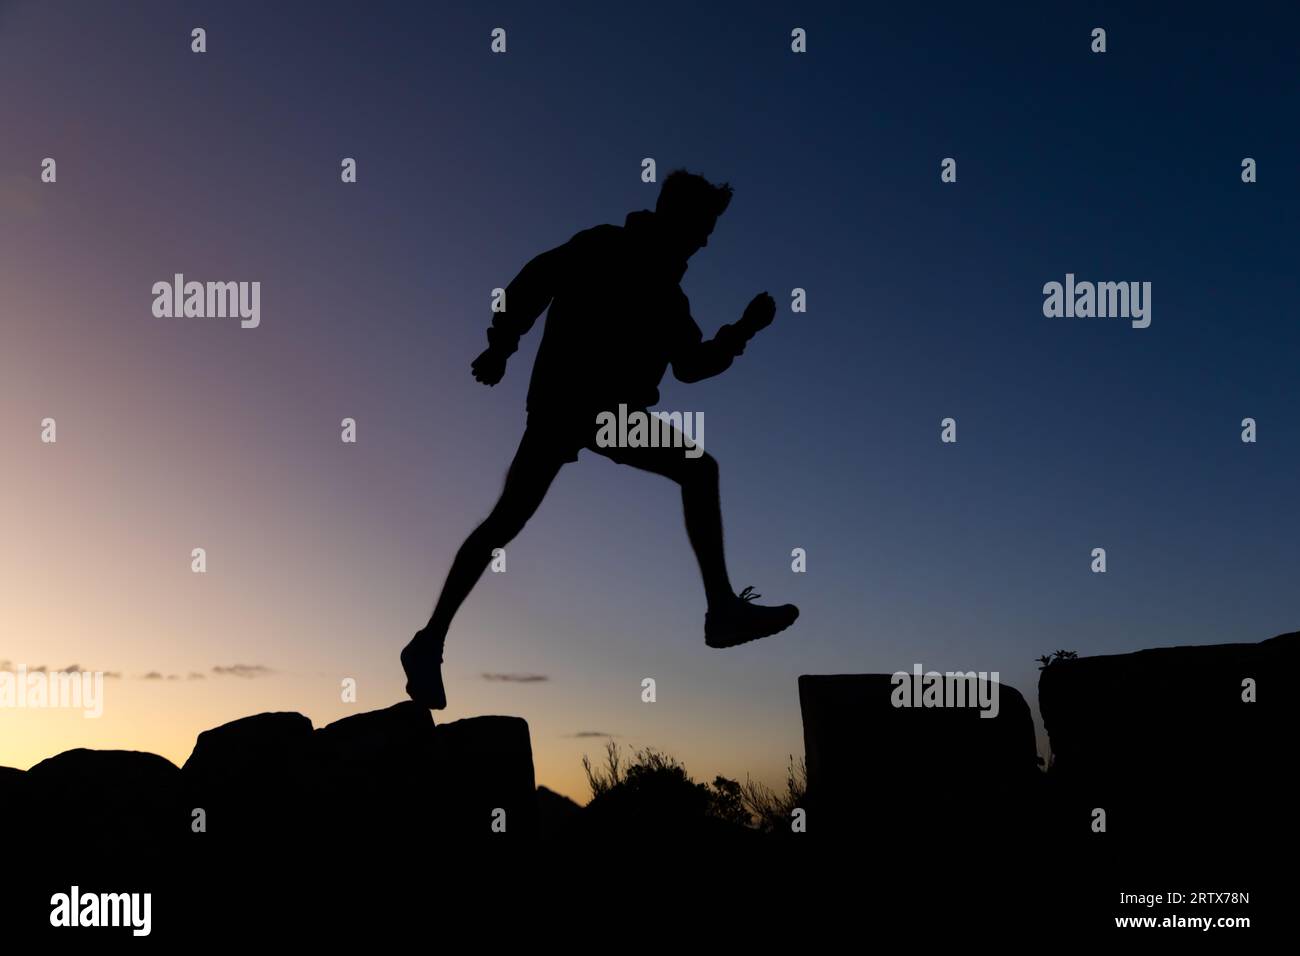 Jeune homme sur une randonnée prenant une longue foulée au lever du soleil en silhouette Banque D'Images